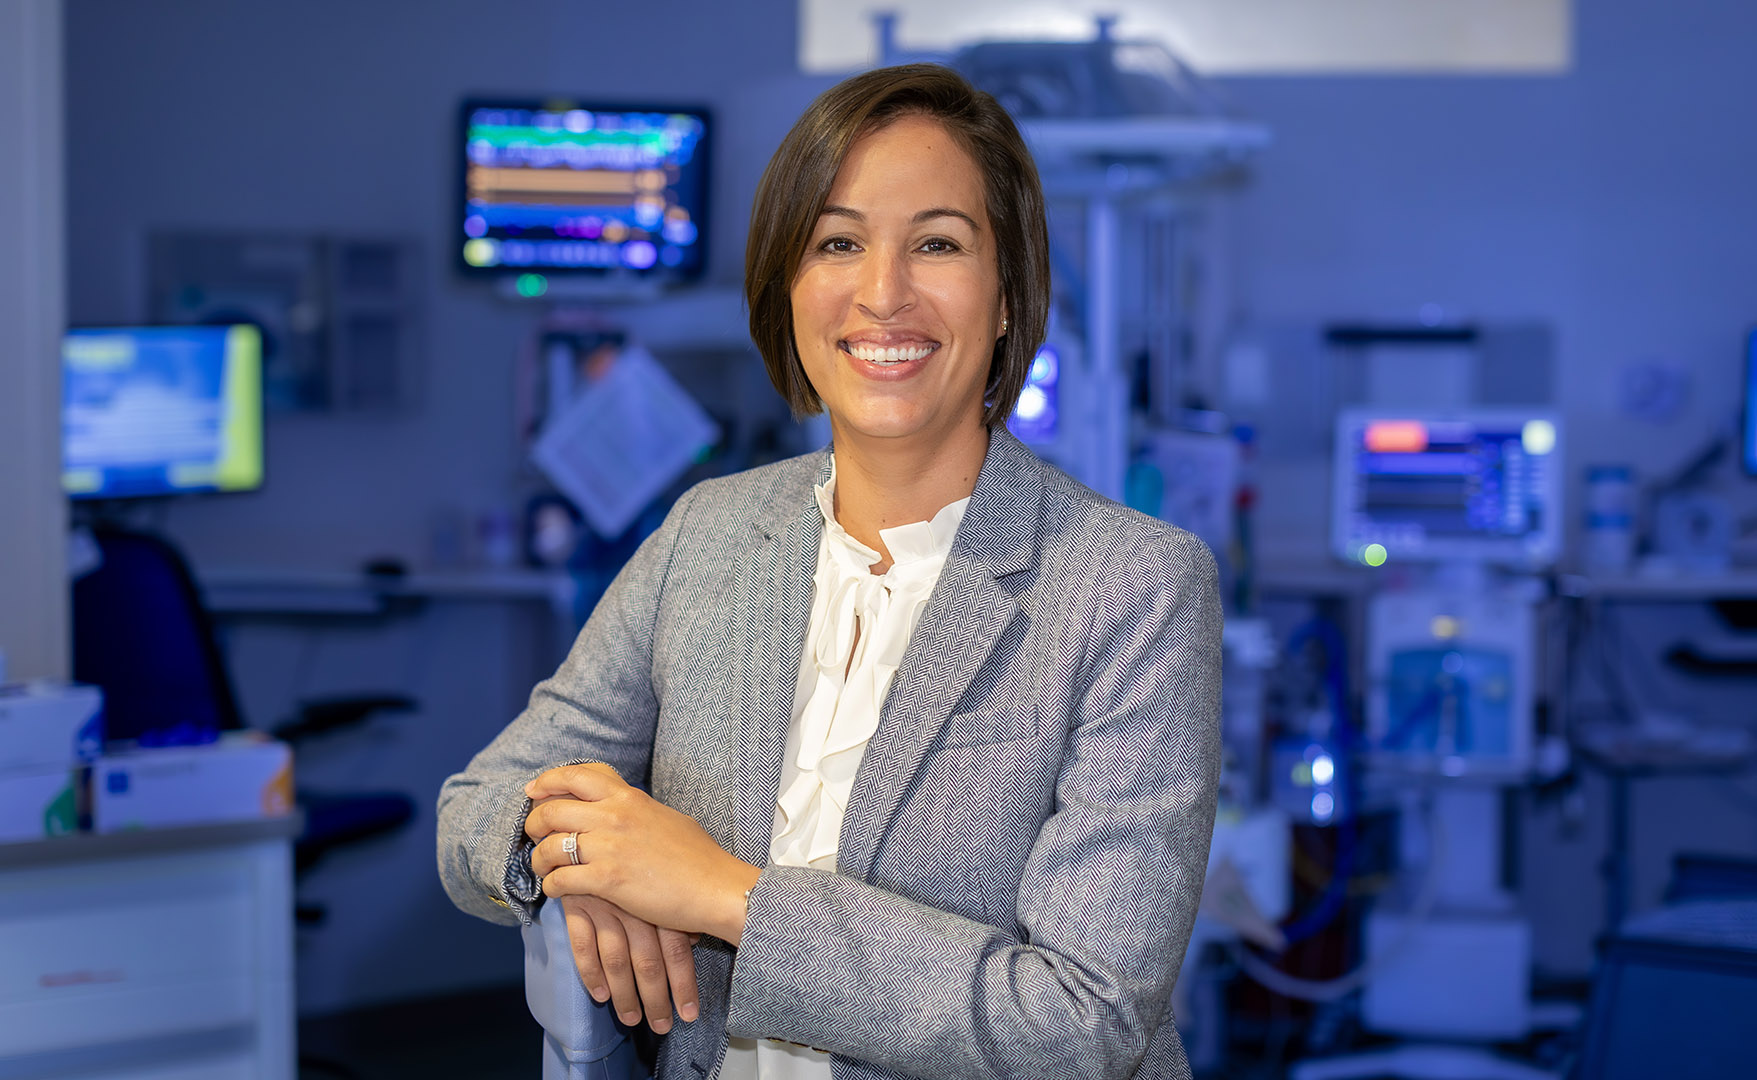 Jennifer Bouzid, senior director of nursing in the Johns Hopkins All Children’s Maternal, Fetal & Neonatal Institute